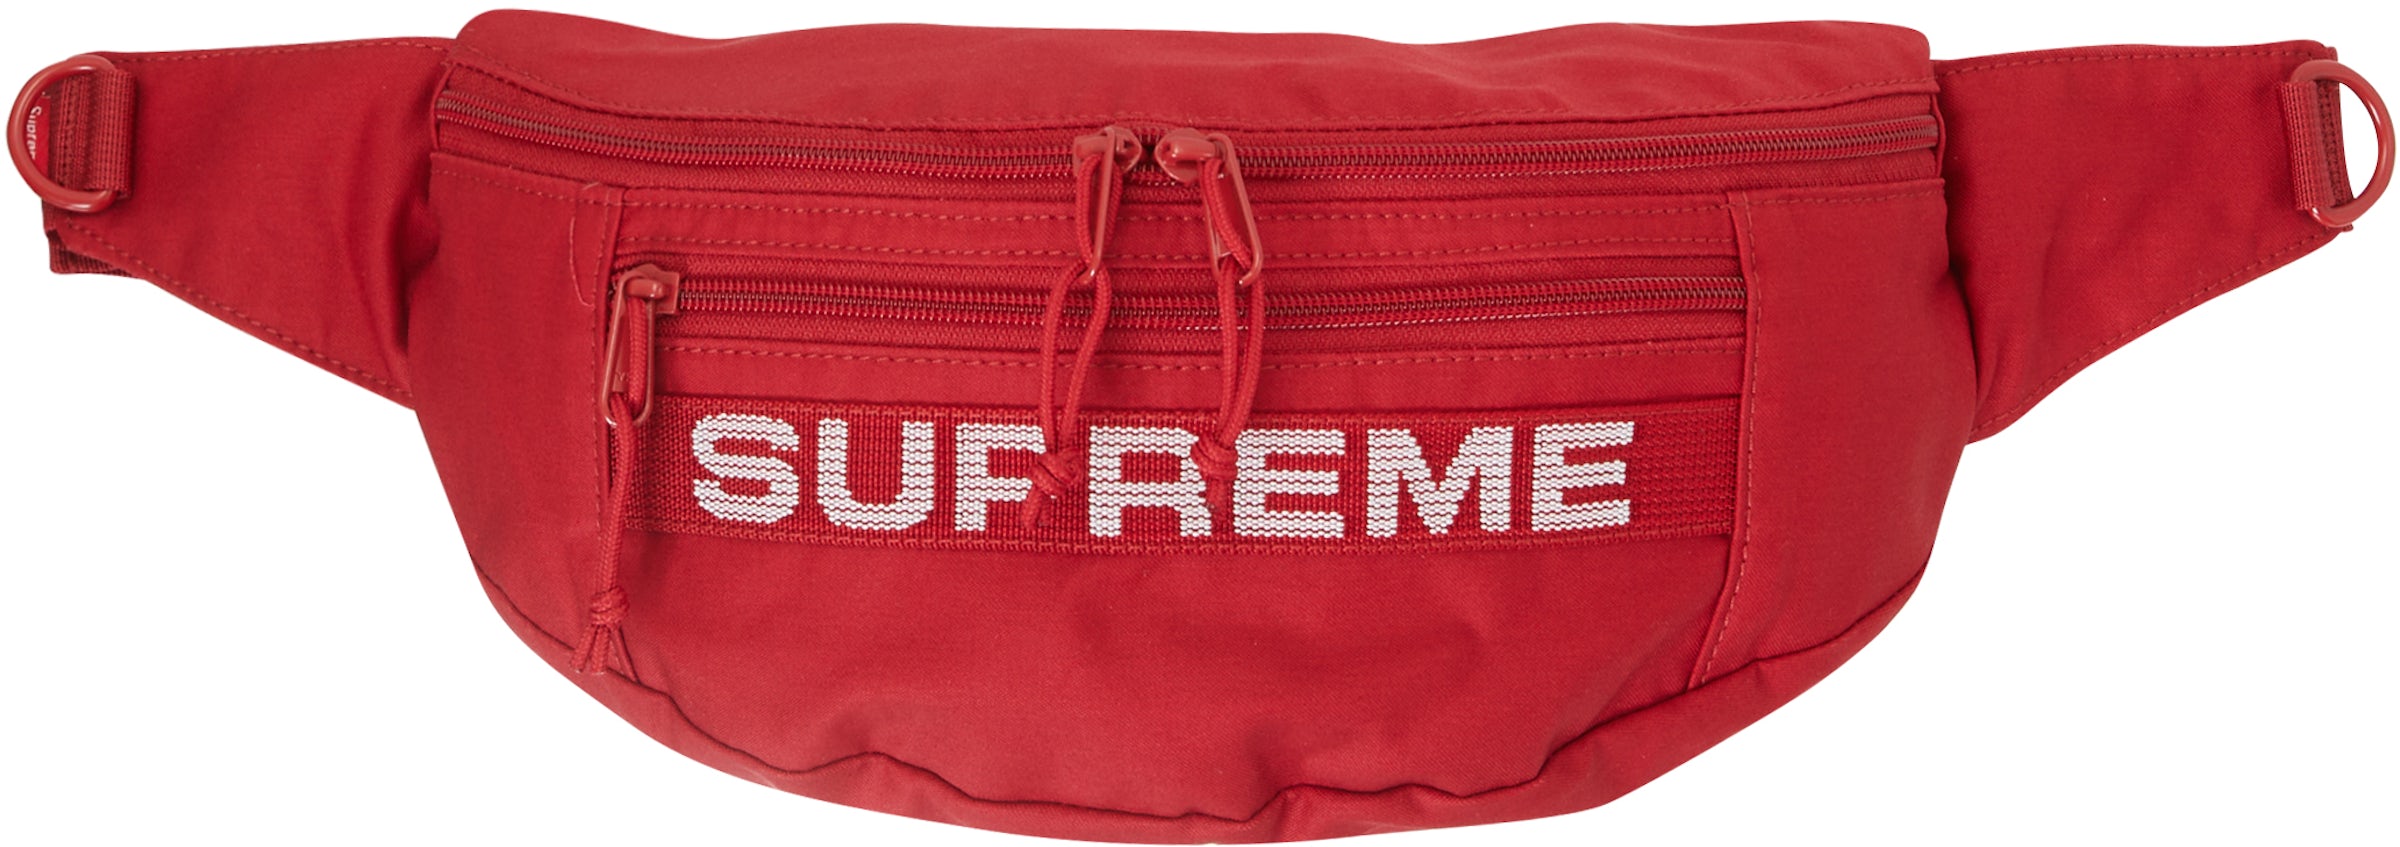 Buy Supreme Cinch Bag (Red) Online - Waves Never Die